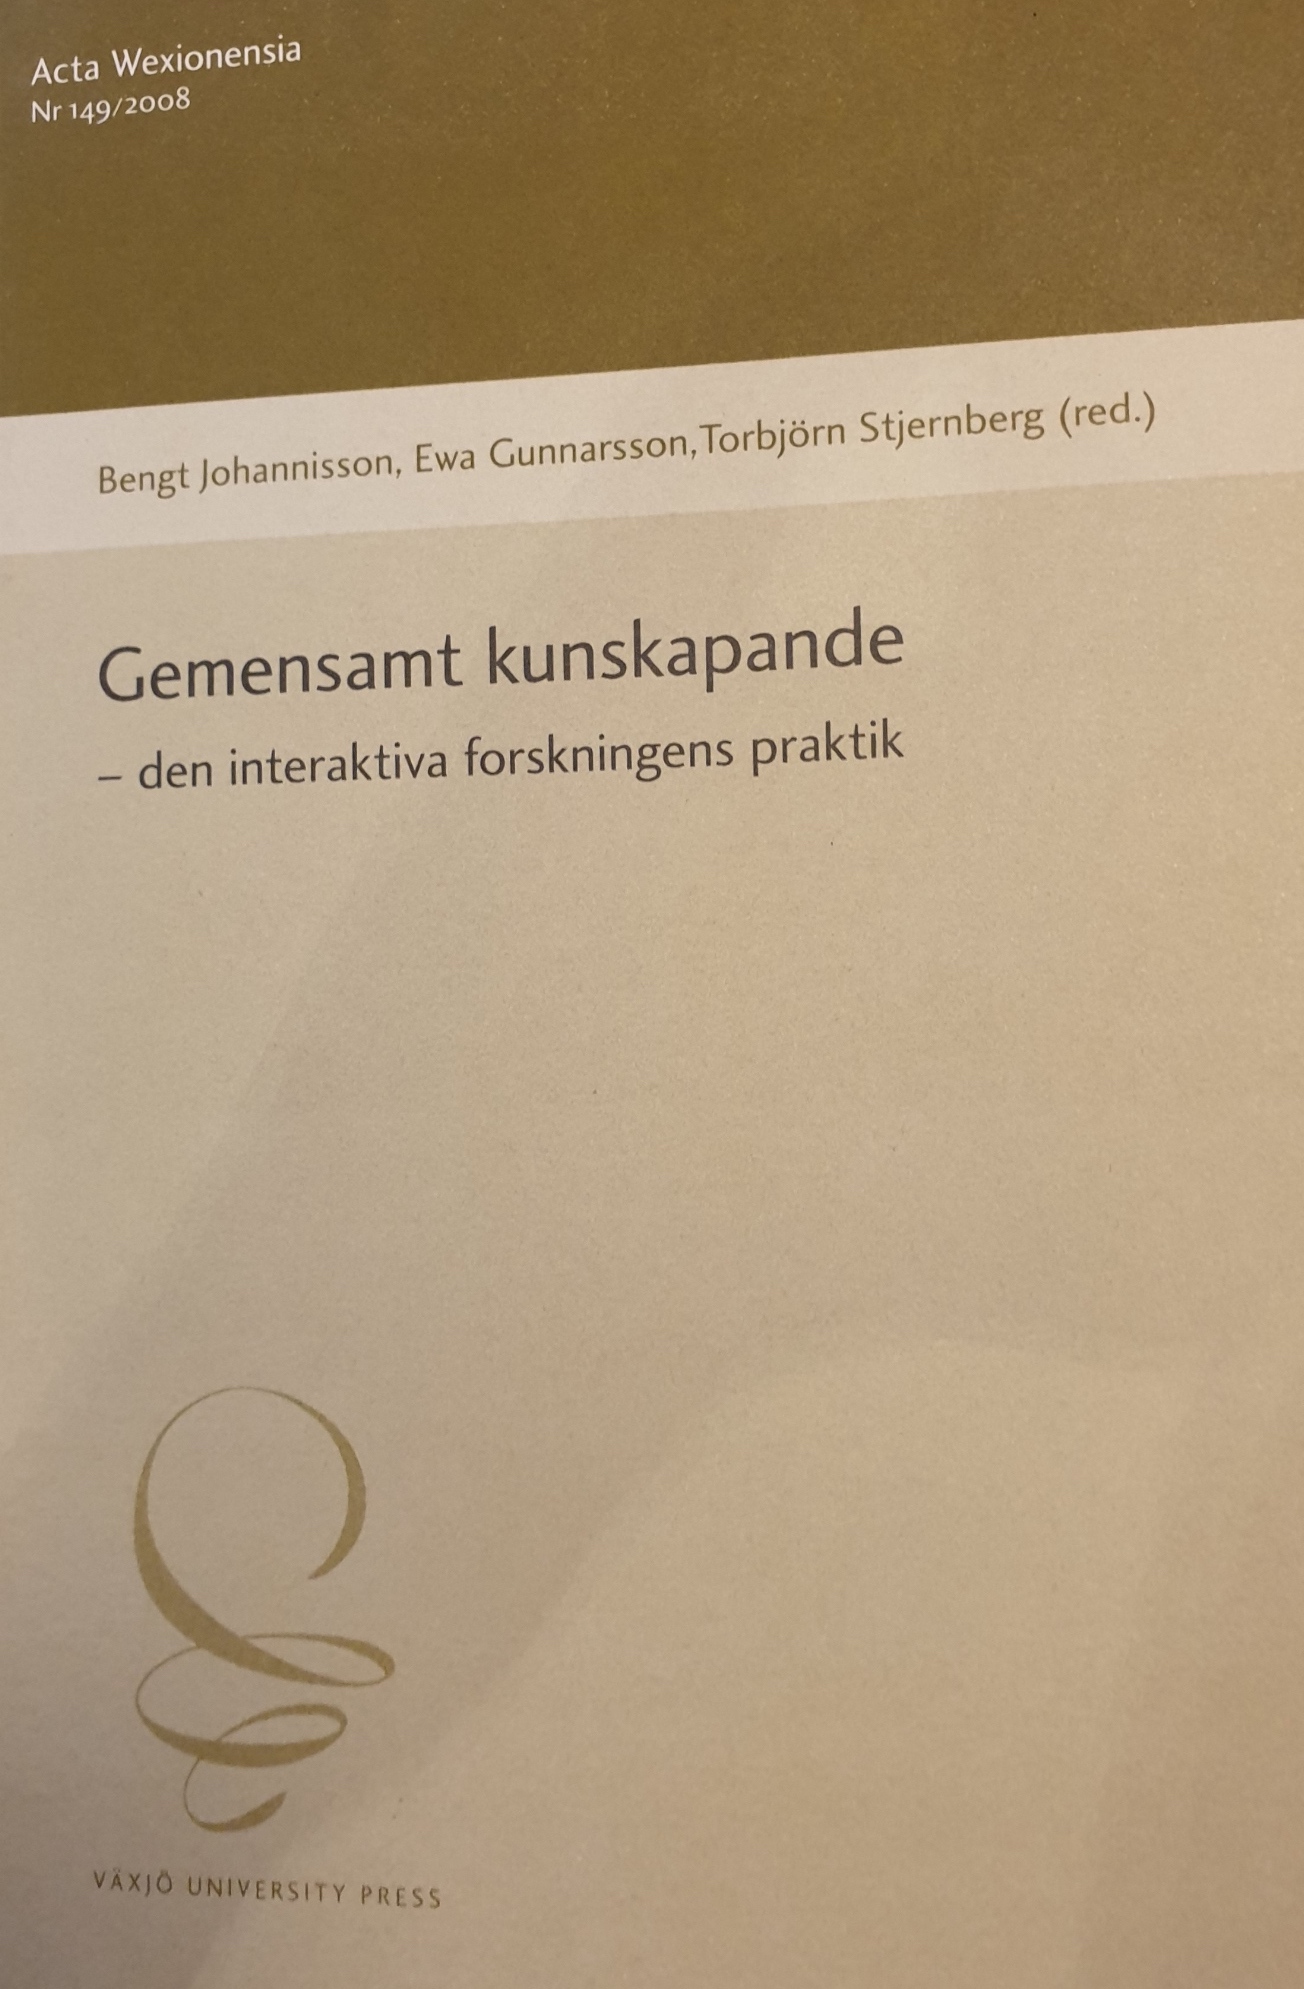 Gemensamt kunskapande - den interaktiva forskningens praktik ; Bengt Johannisson, Ewa Gunnarsson, Torbjörn Stjernberg (red.); 2008